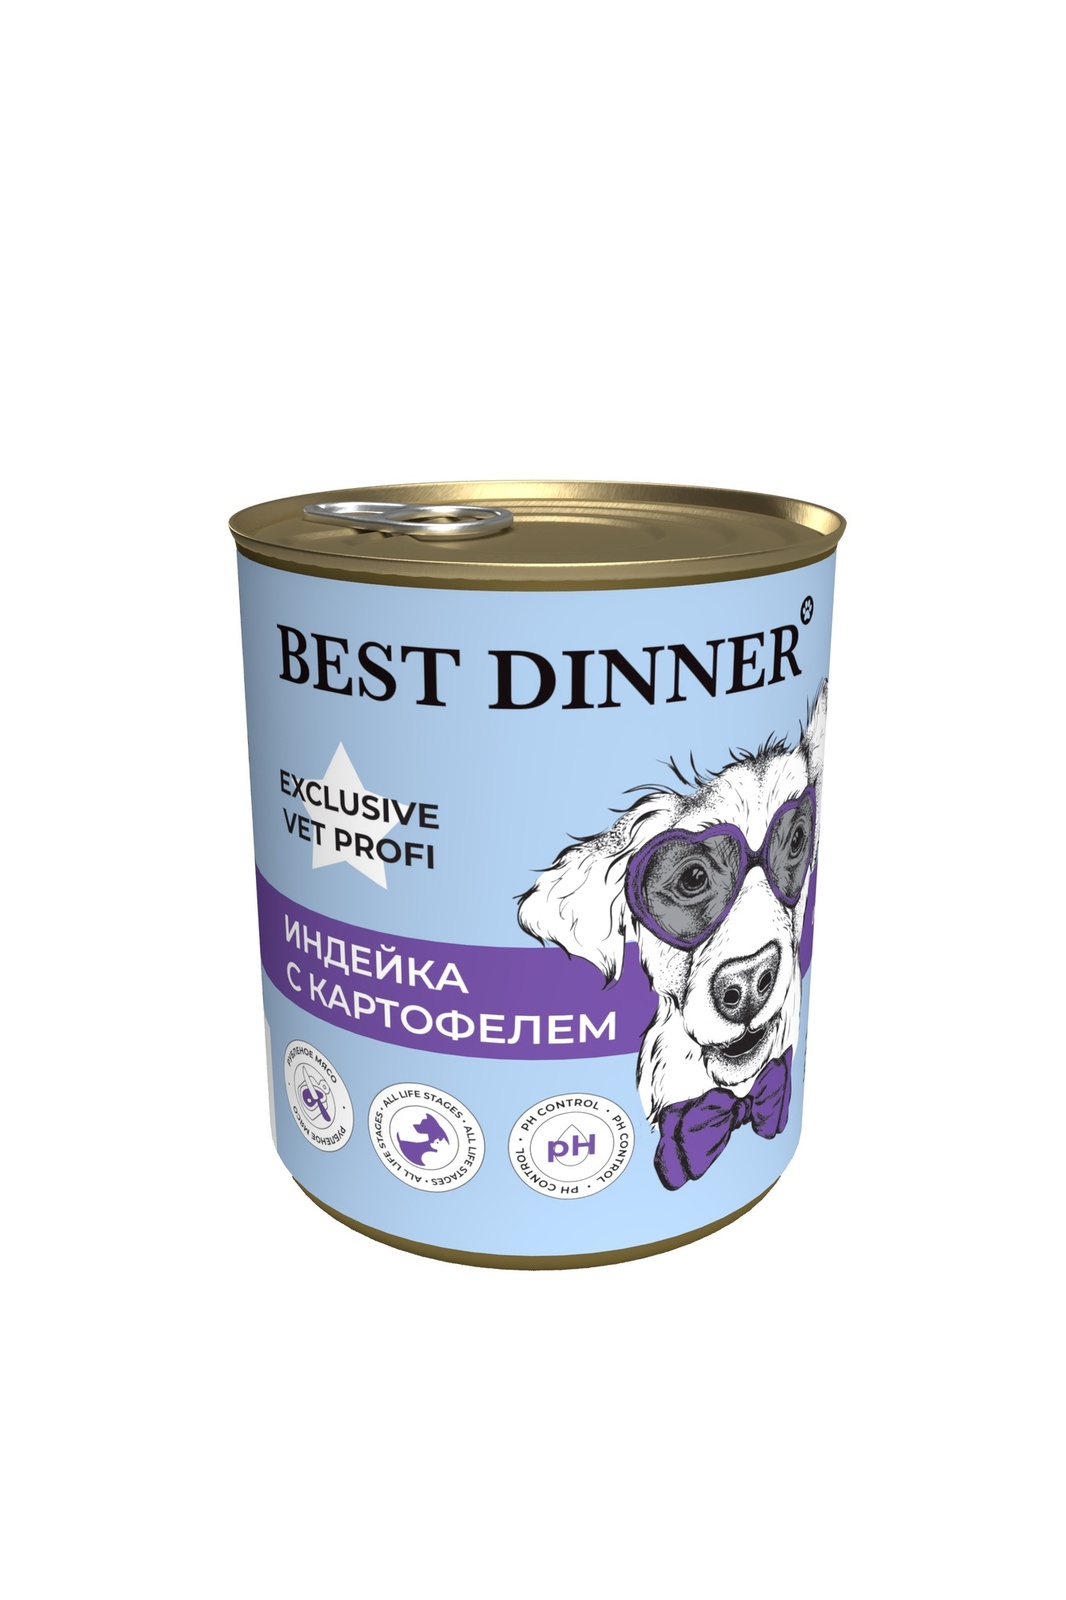 Best Dinner Best Dinner консервы для собак Exclusive Urinary Индейка с картофелем (340 г) best dinner best dinner консервы конина паштет для собак с чувствительным пищеварением 340 г